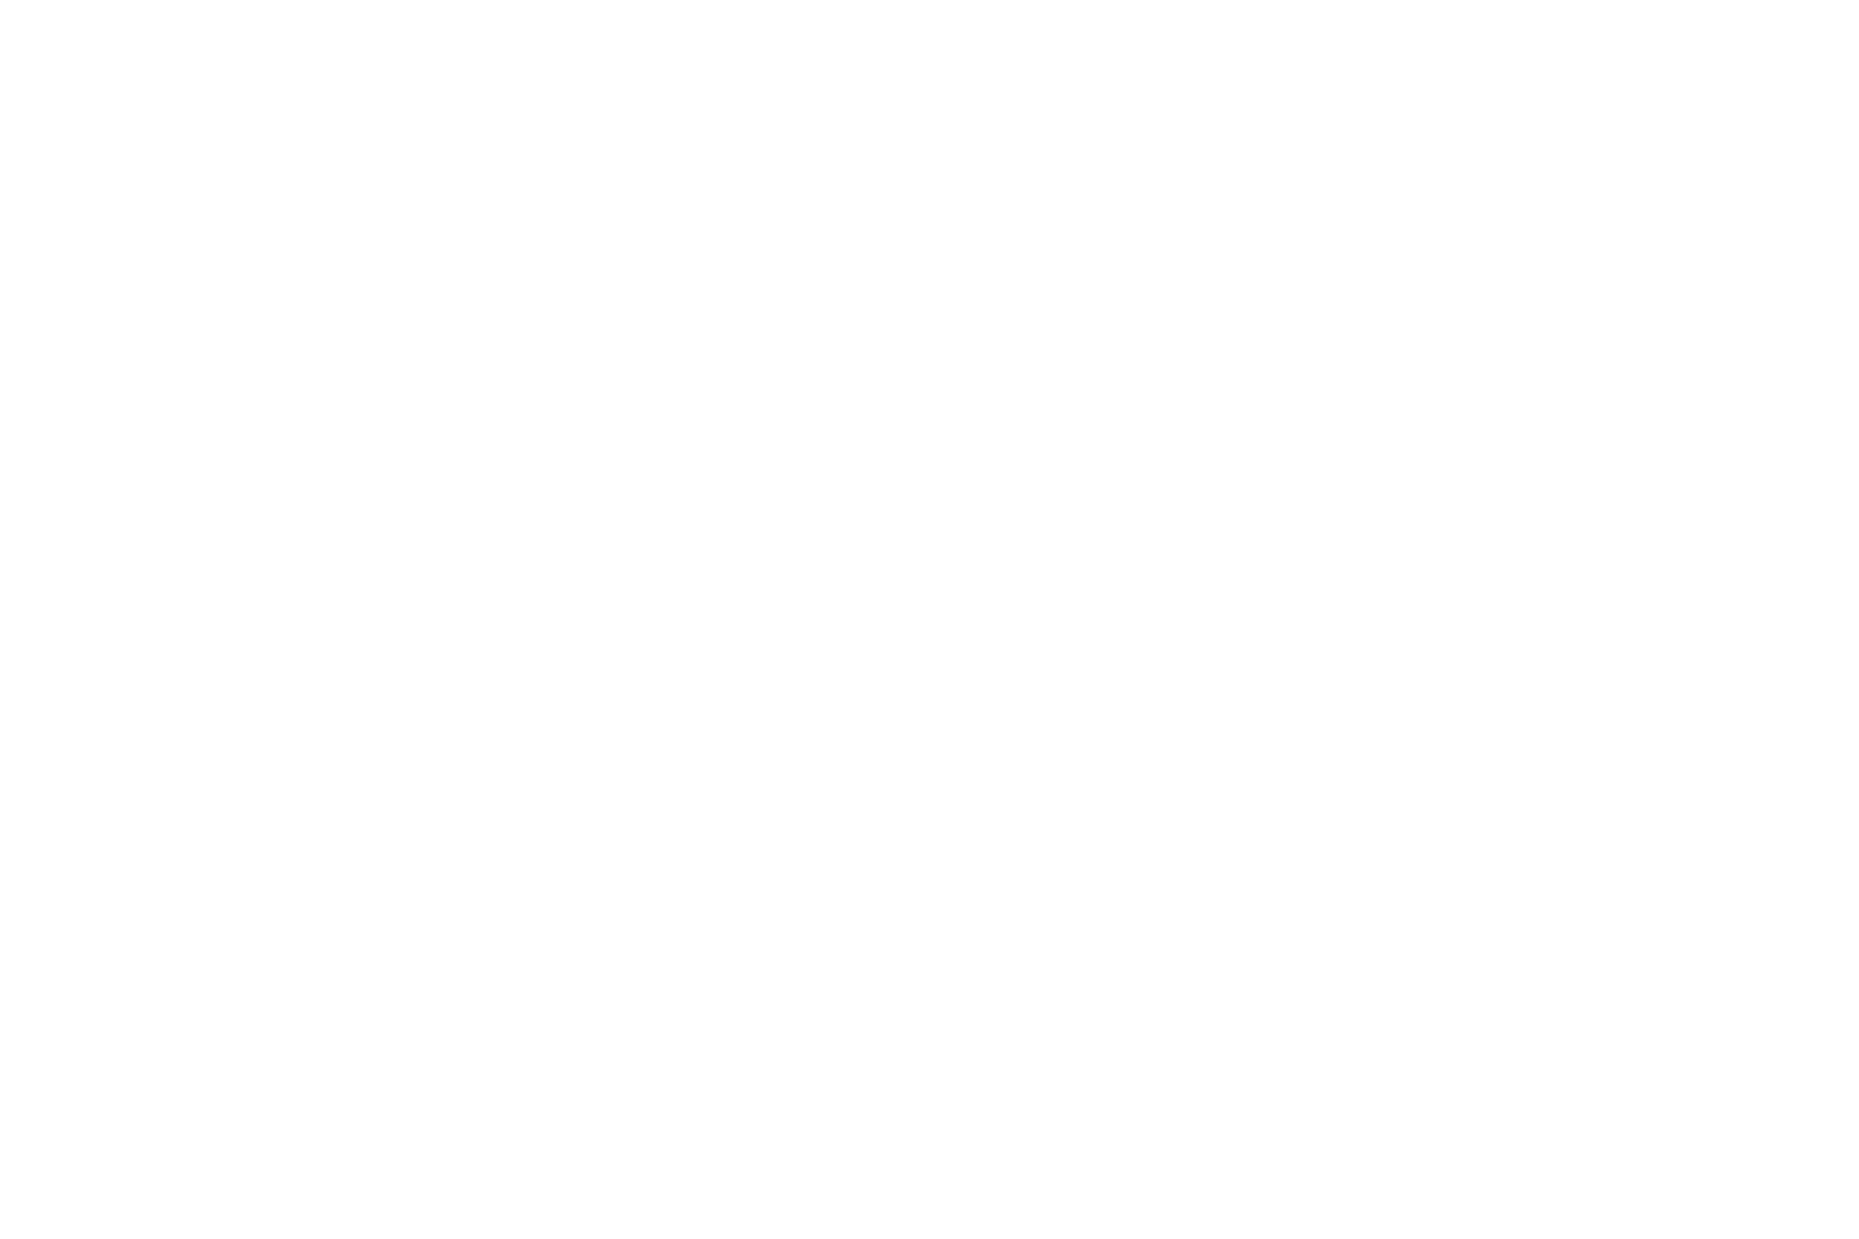 SaltCity Studio